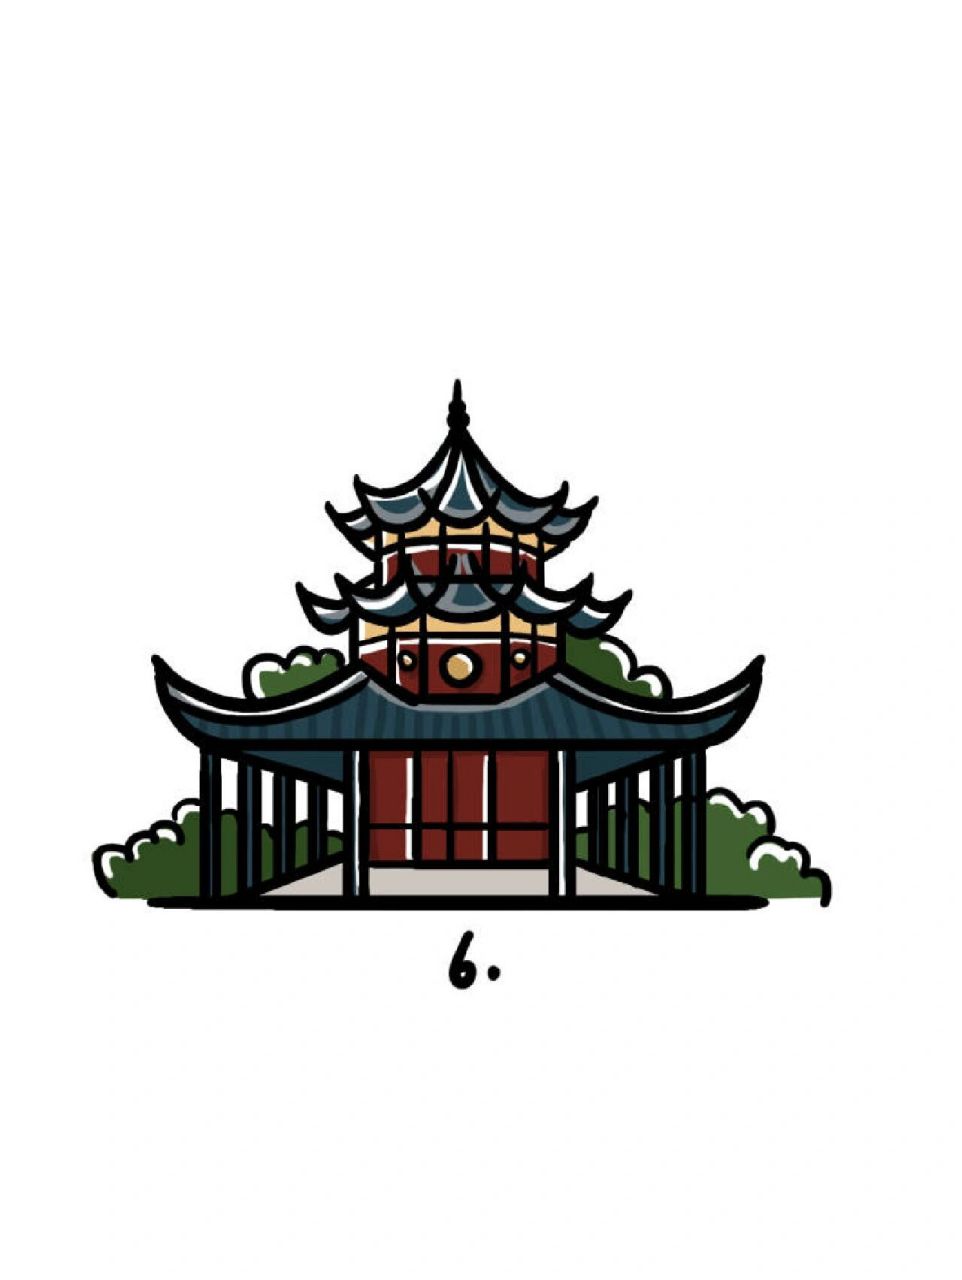 贵州建筑简笔画图片